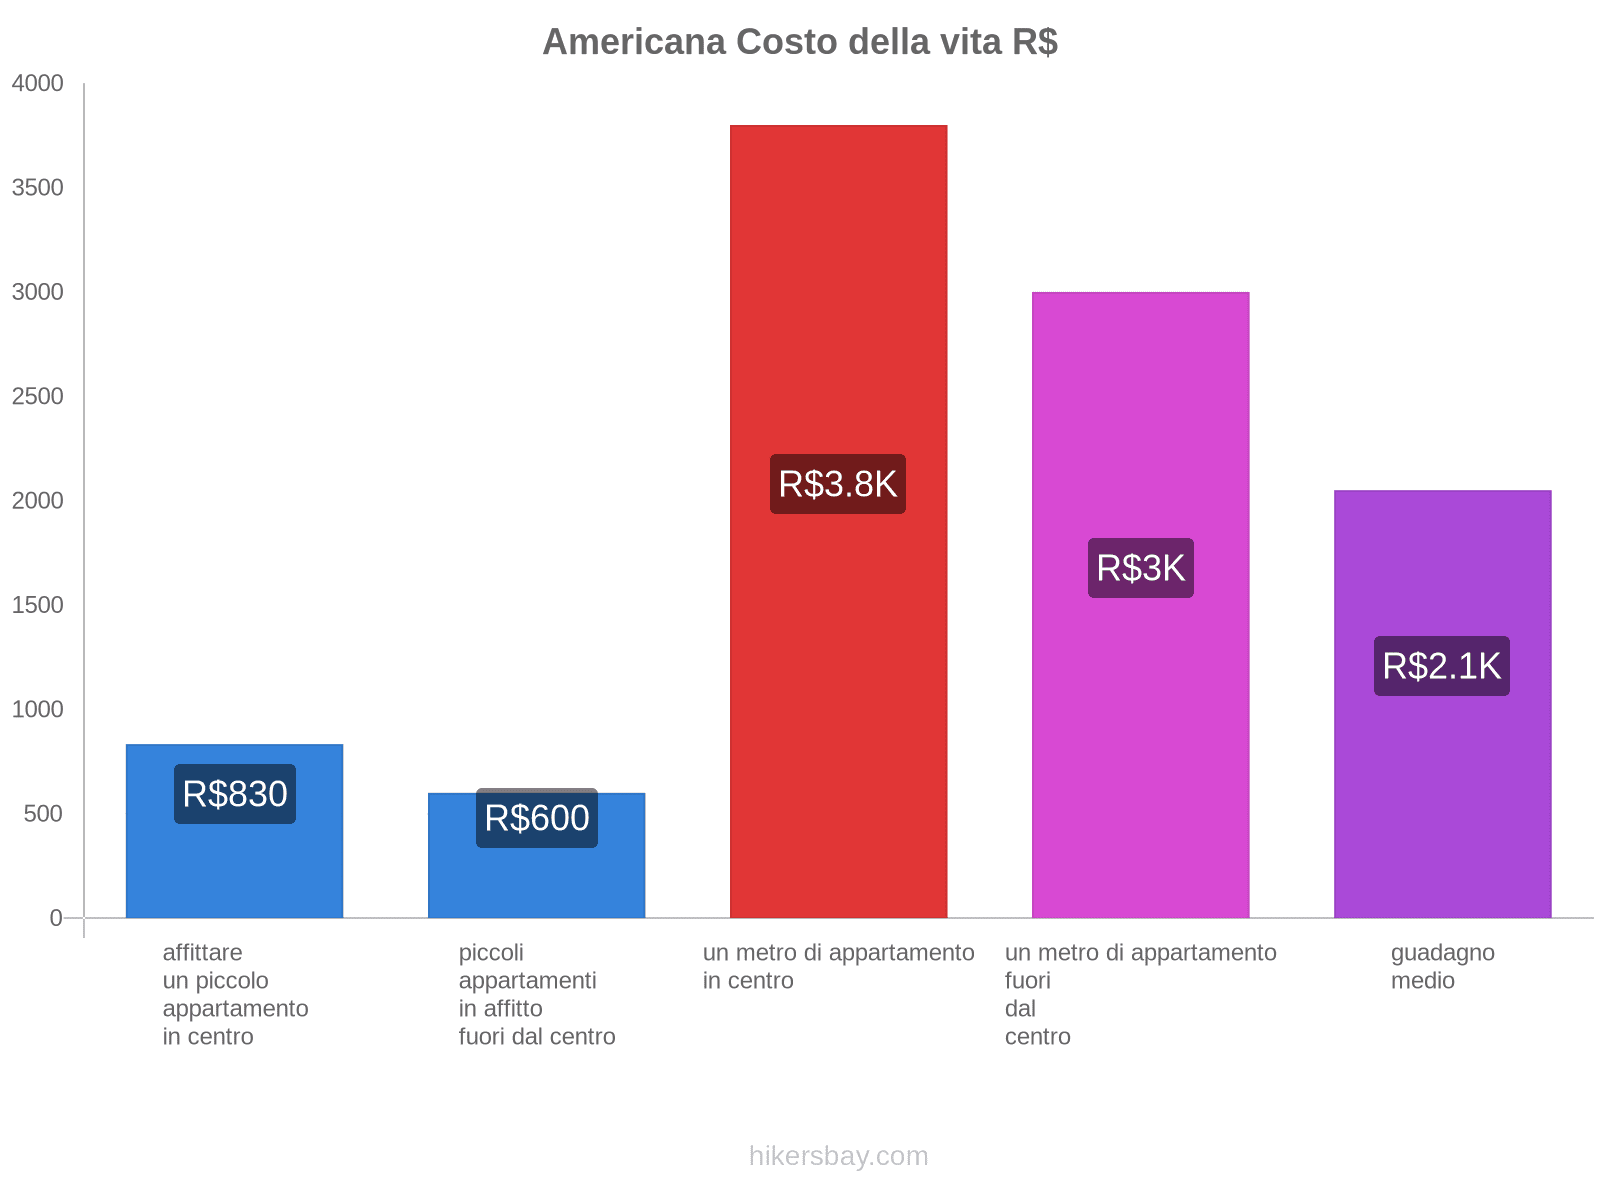 Americana costo della vita hikersbay.com